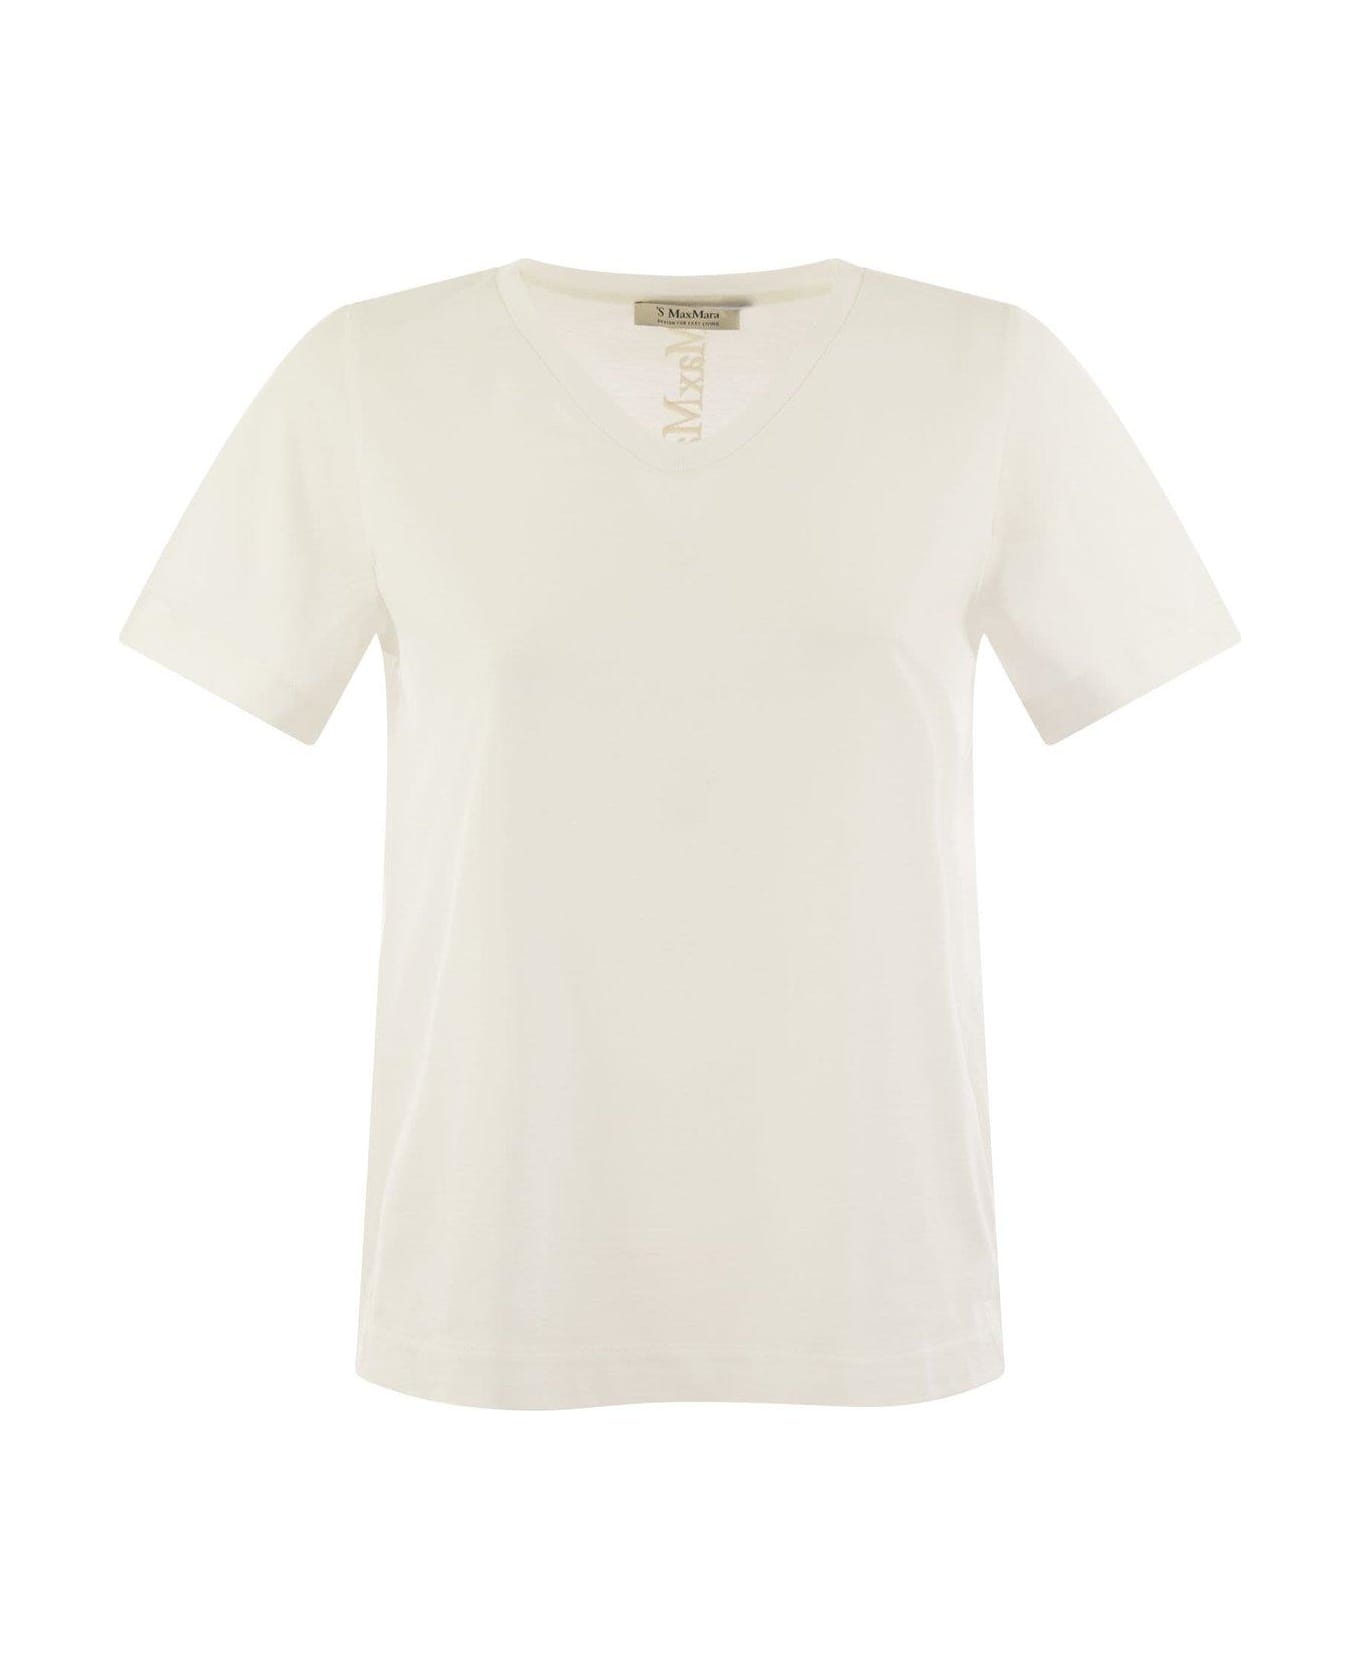 'S Max Mara V-neck Crewneck T-shirt - White